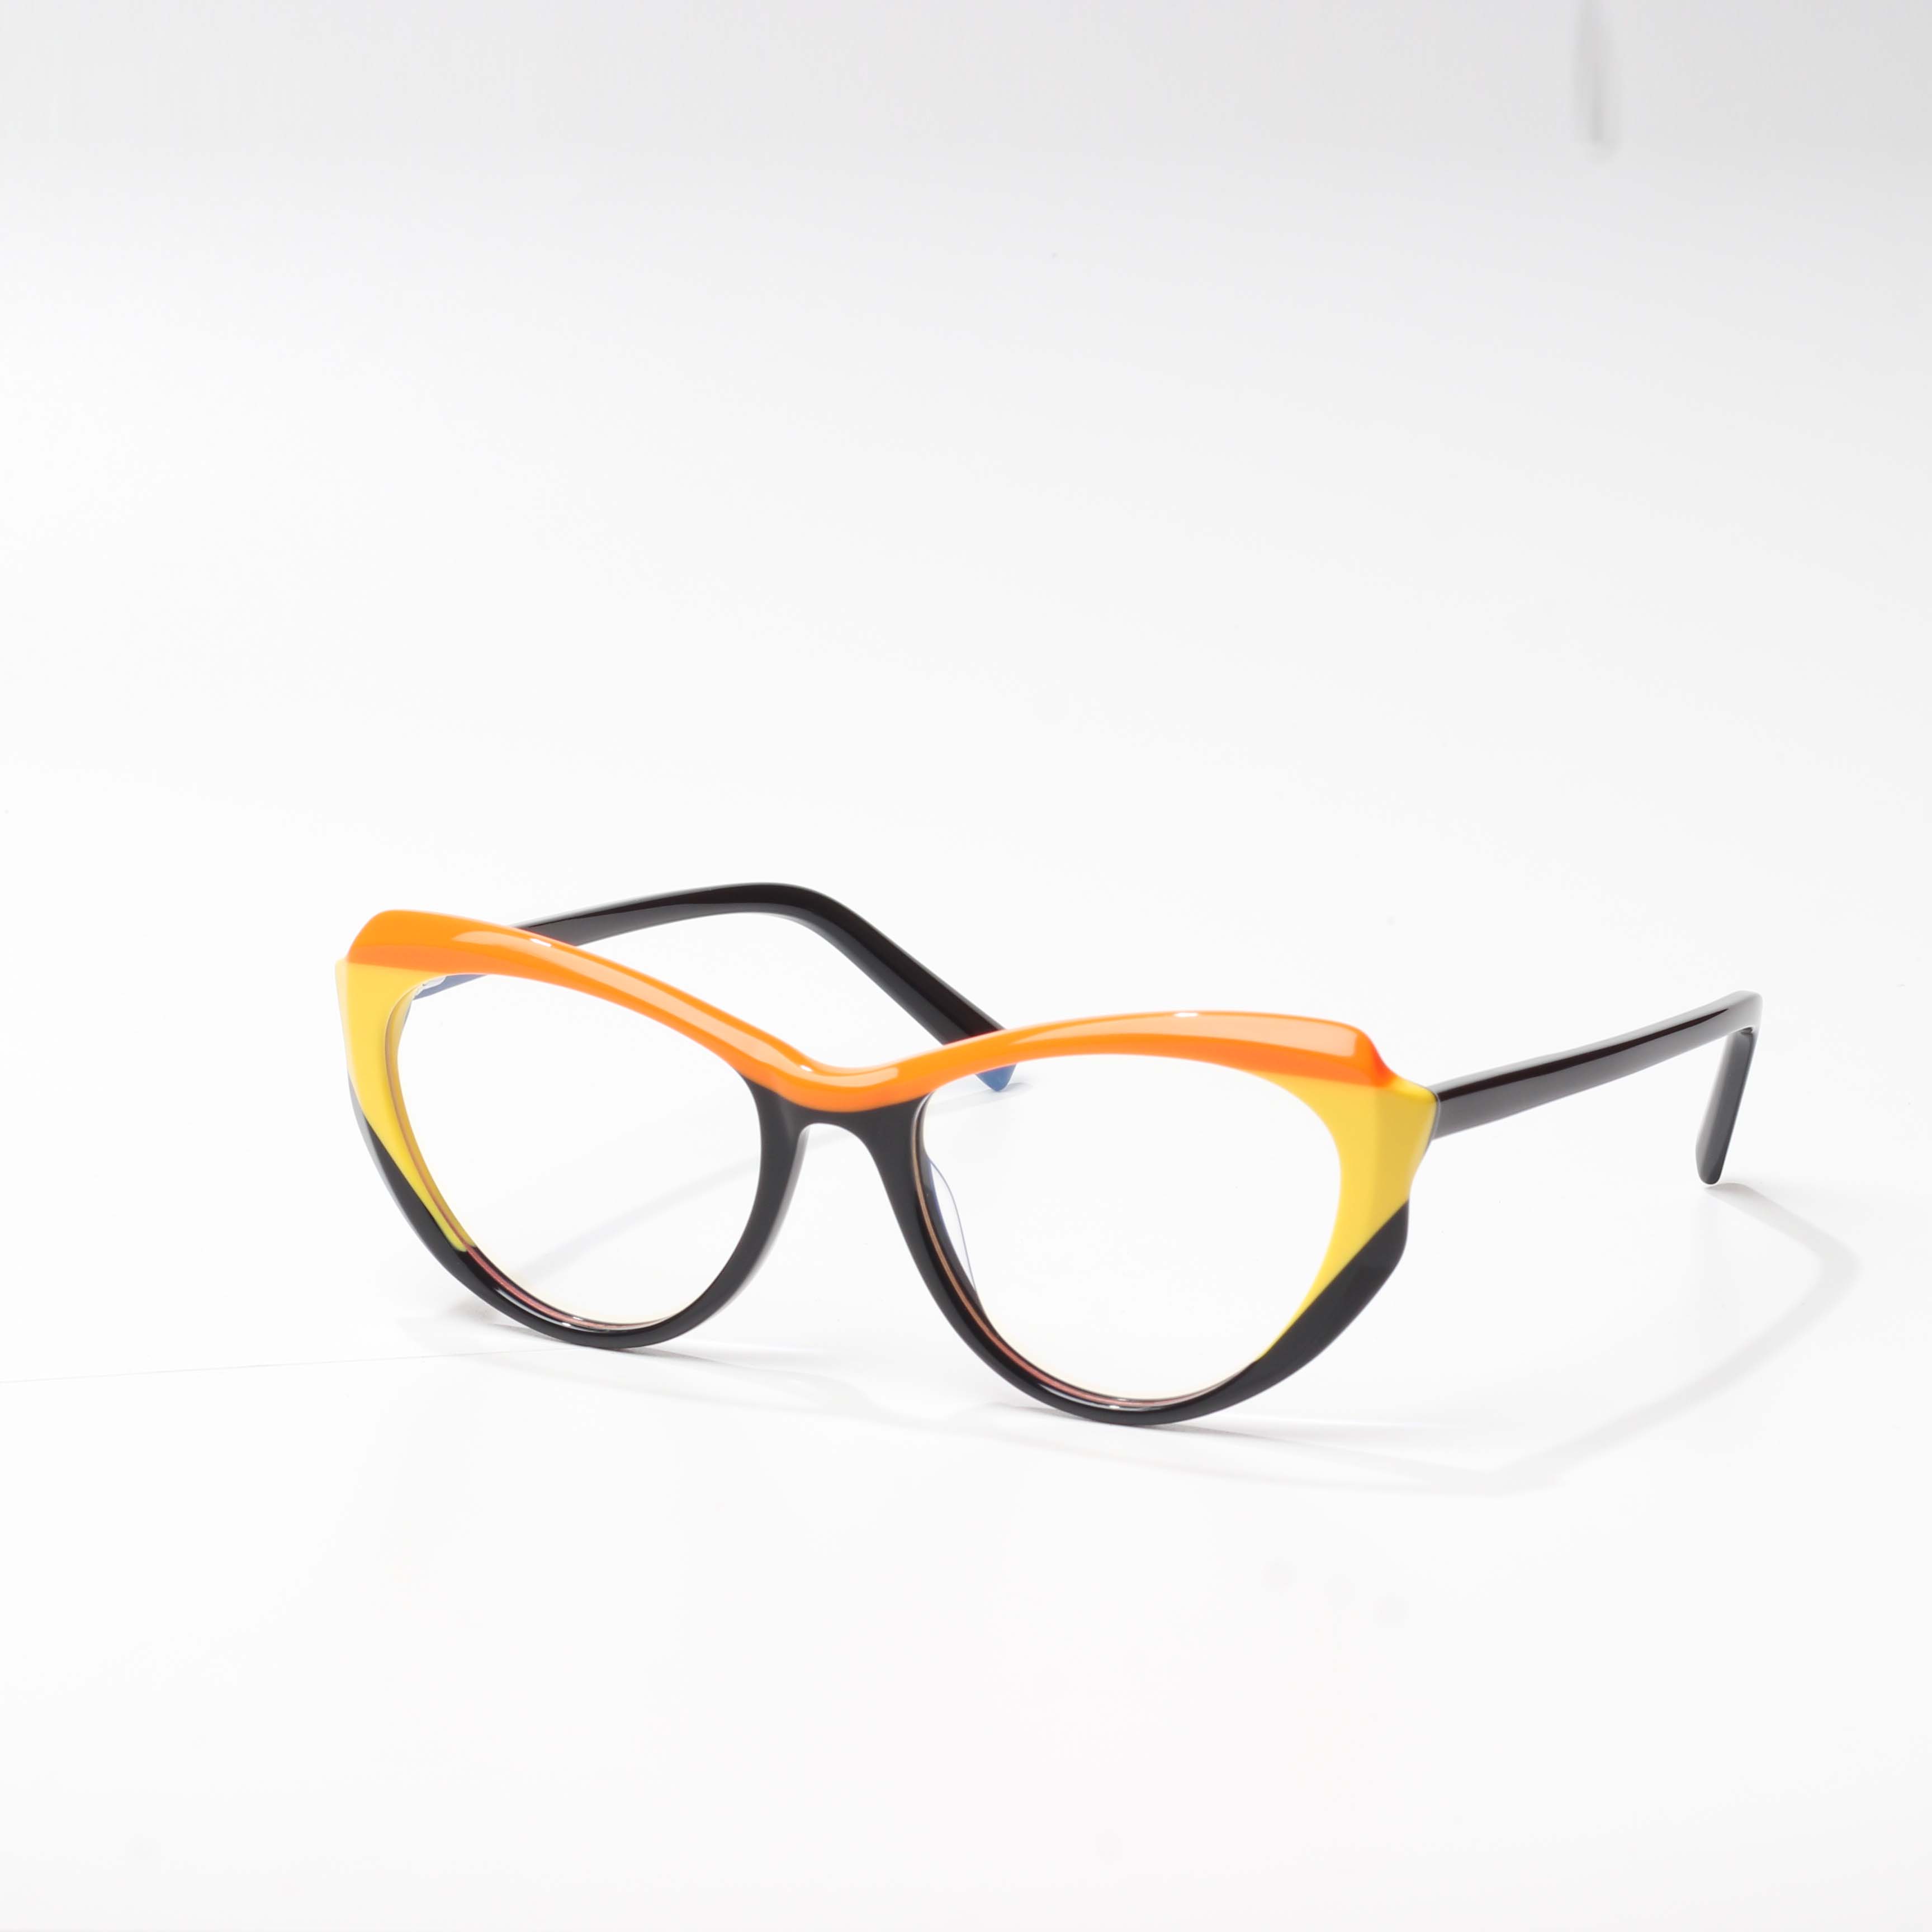 acetate frame glasses